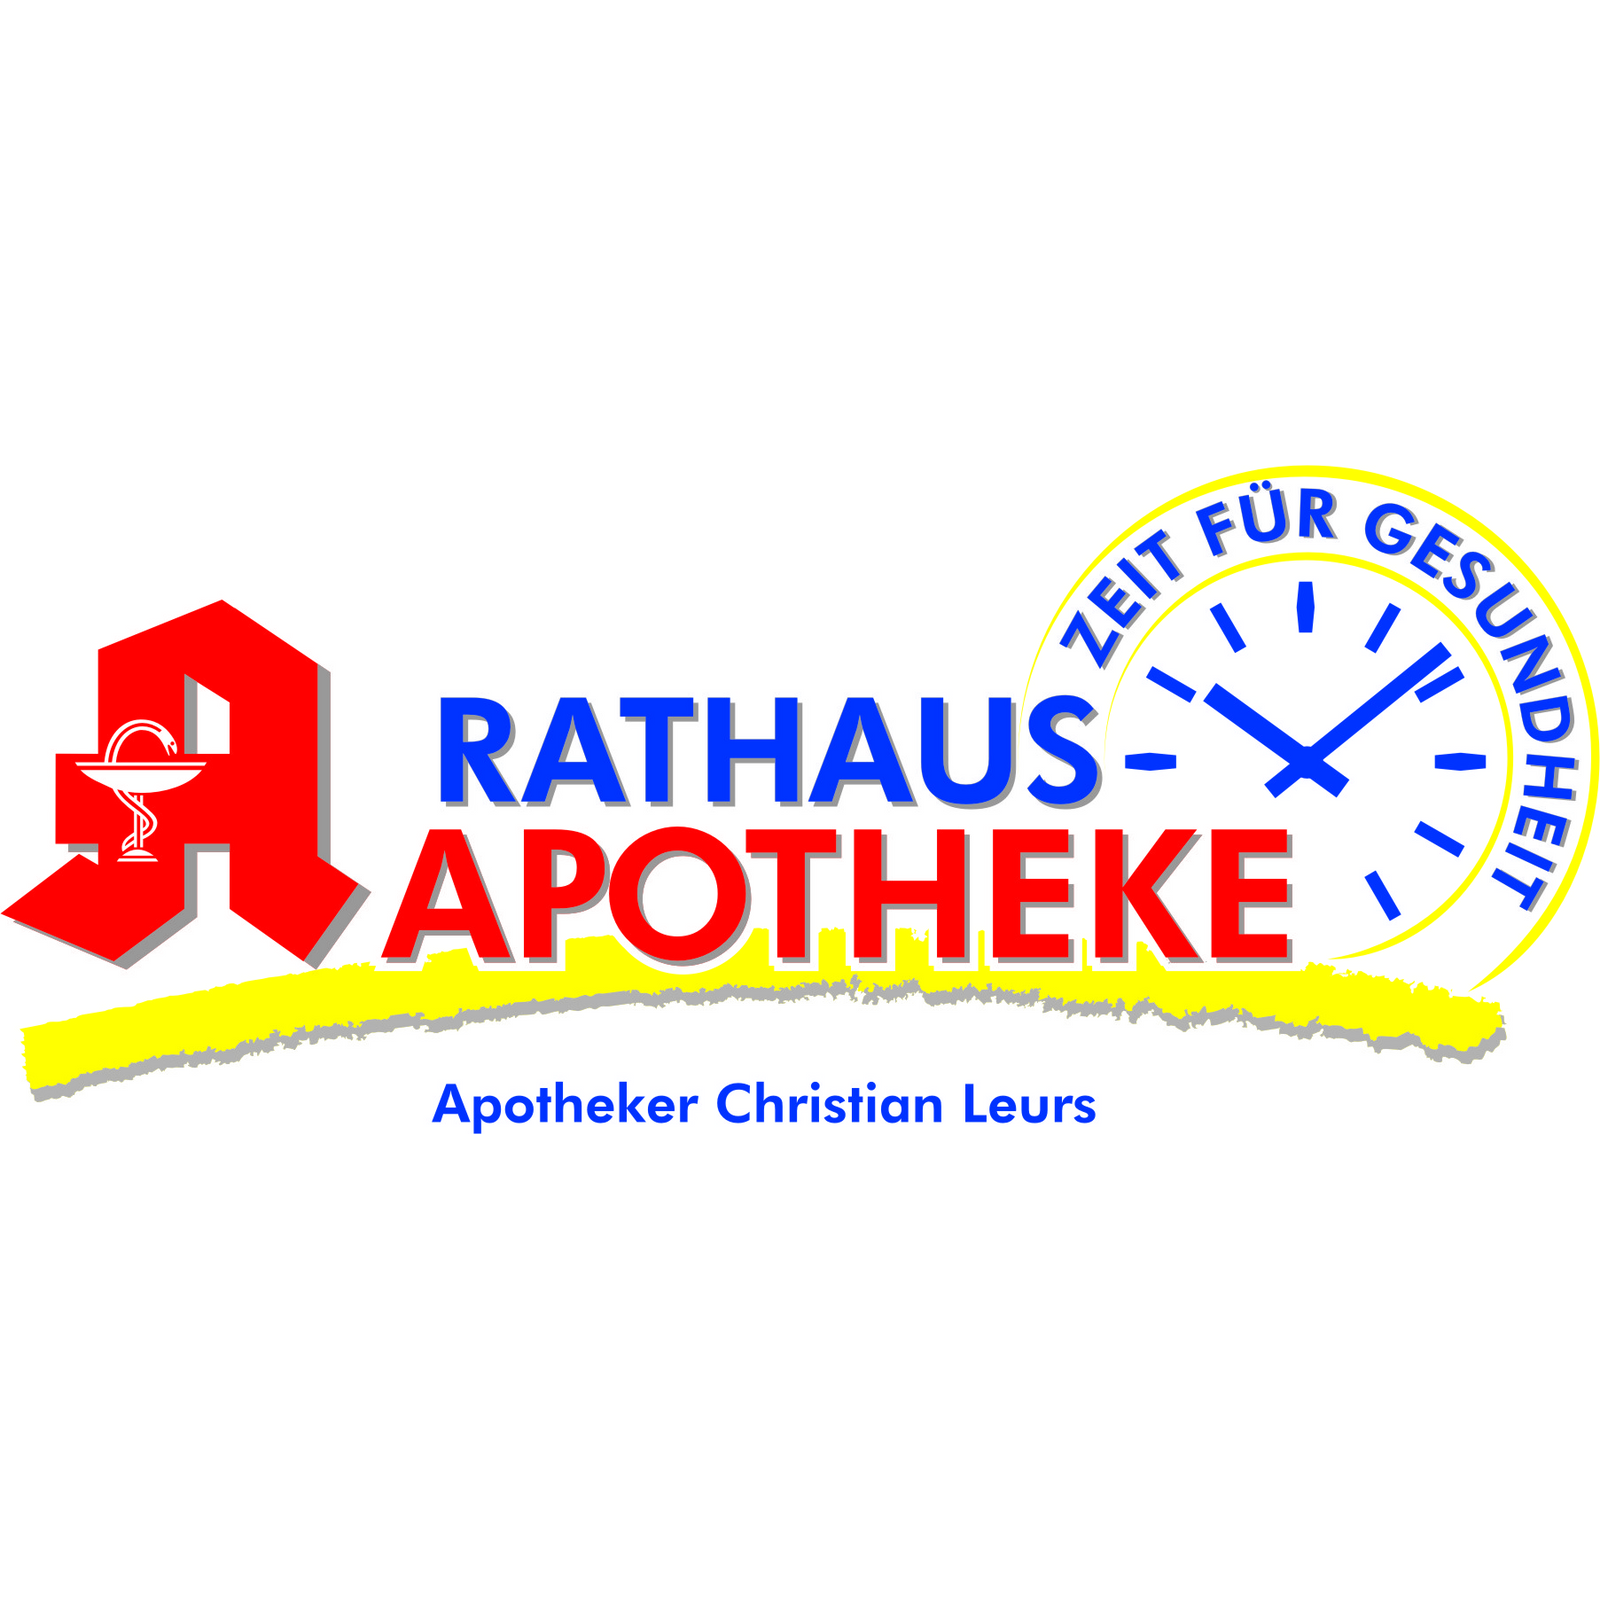 Rathaus-Apotheke in Kevelaer - Logo